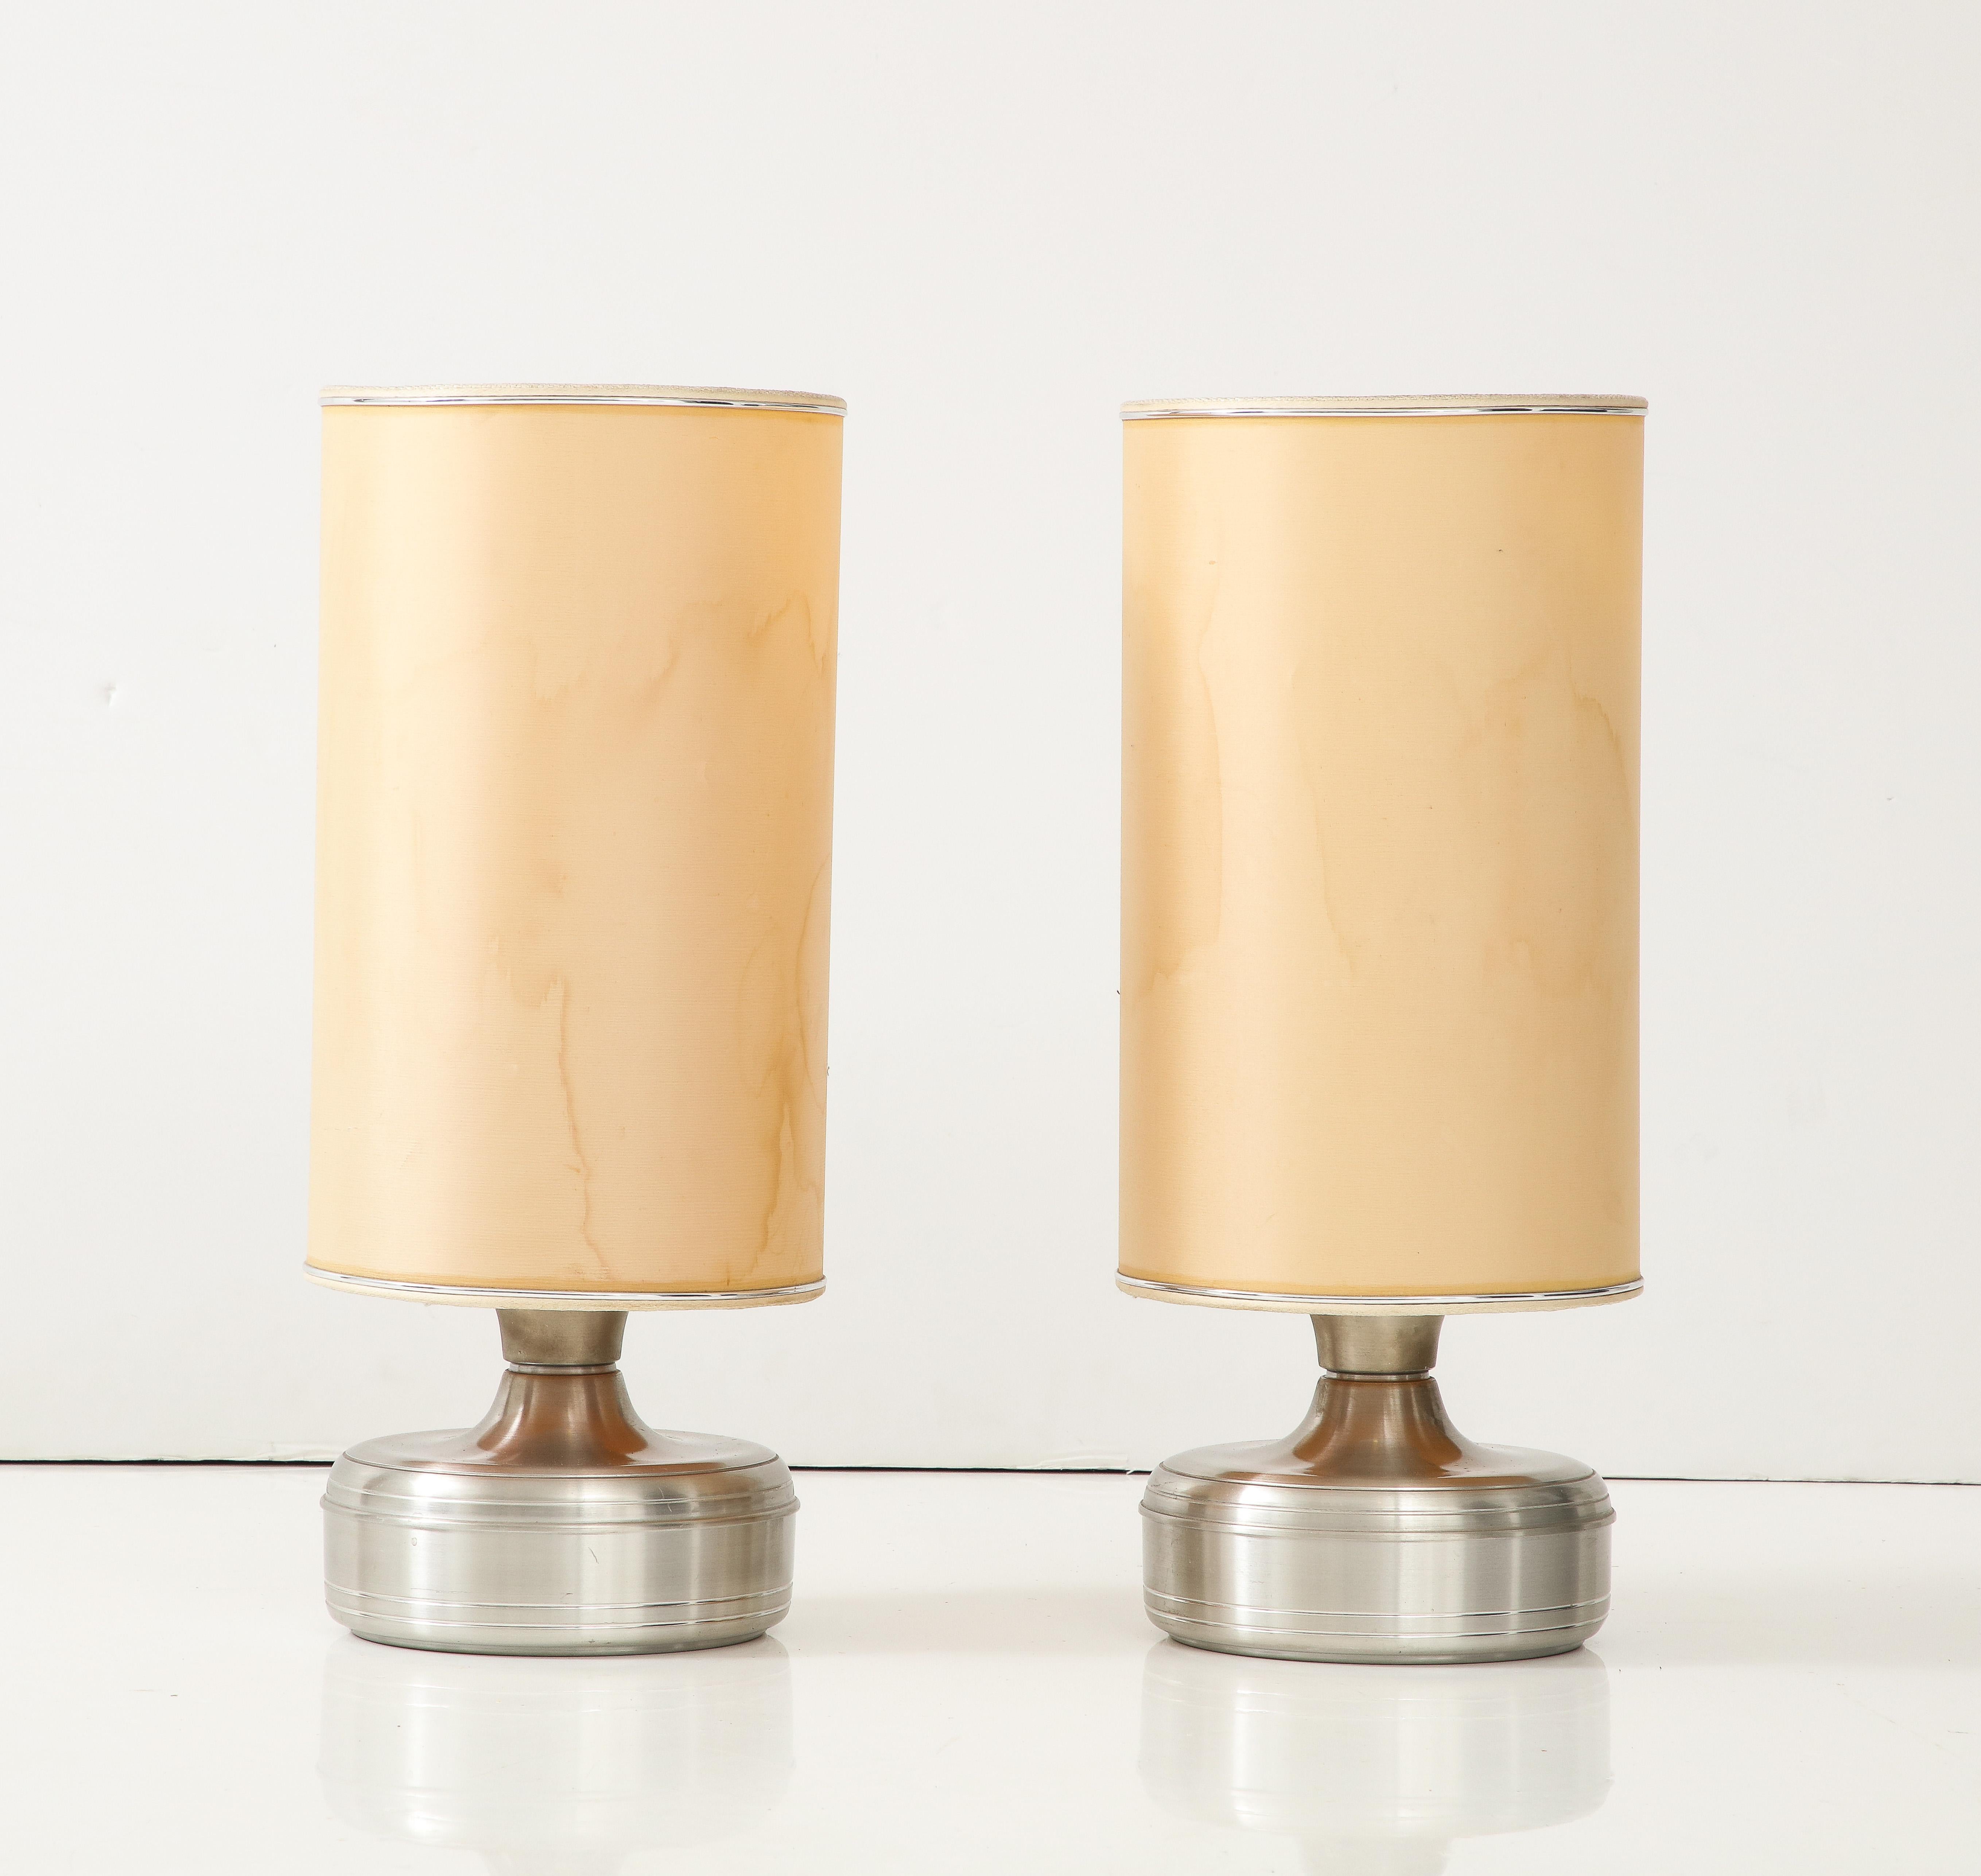 Ein Paar verchromte, bauchige Lumi-Lampen aus den 1960er Jahren mit ihren originalen Seidenschirmen. Behält die Originalsignatur des Herstellers auf dem Sockel. Lumi war eines der innovativsten Unternehmen für Beleuchtungsdesign in Italien während